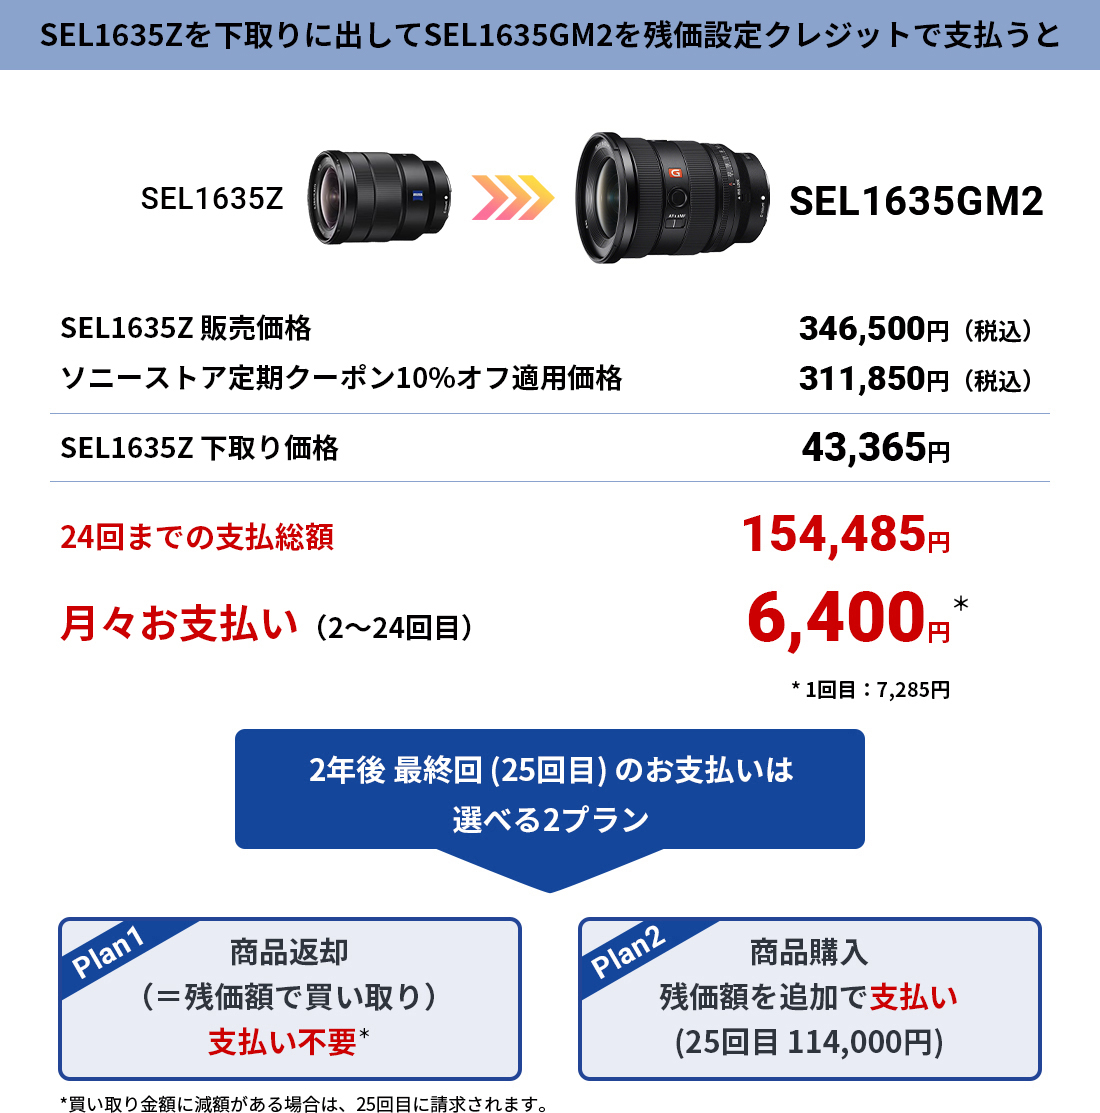 SEL1635GM2に賢く買い替えませんか？ | デジタル一眼カメラα（アルファ 